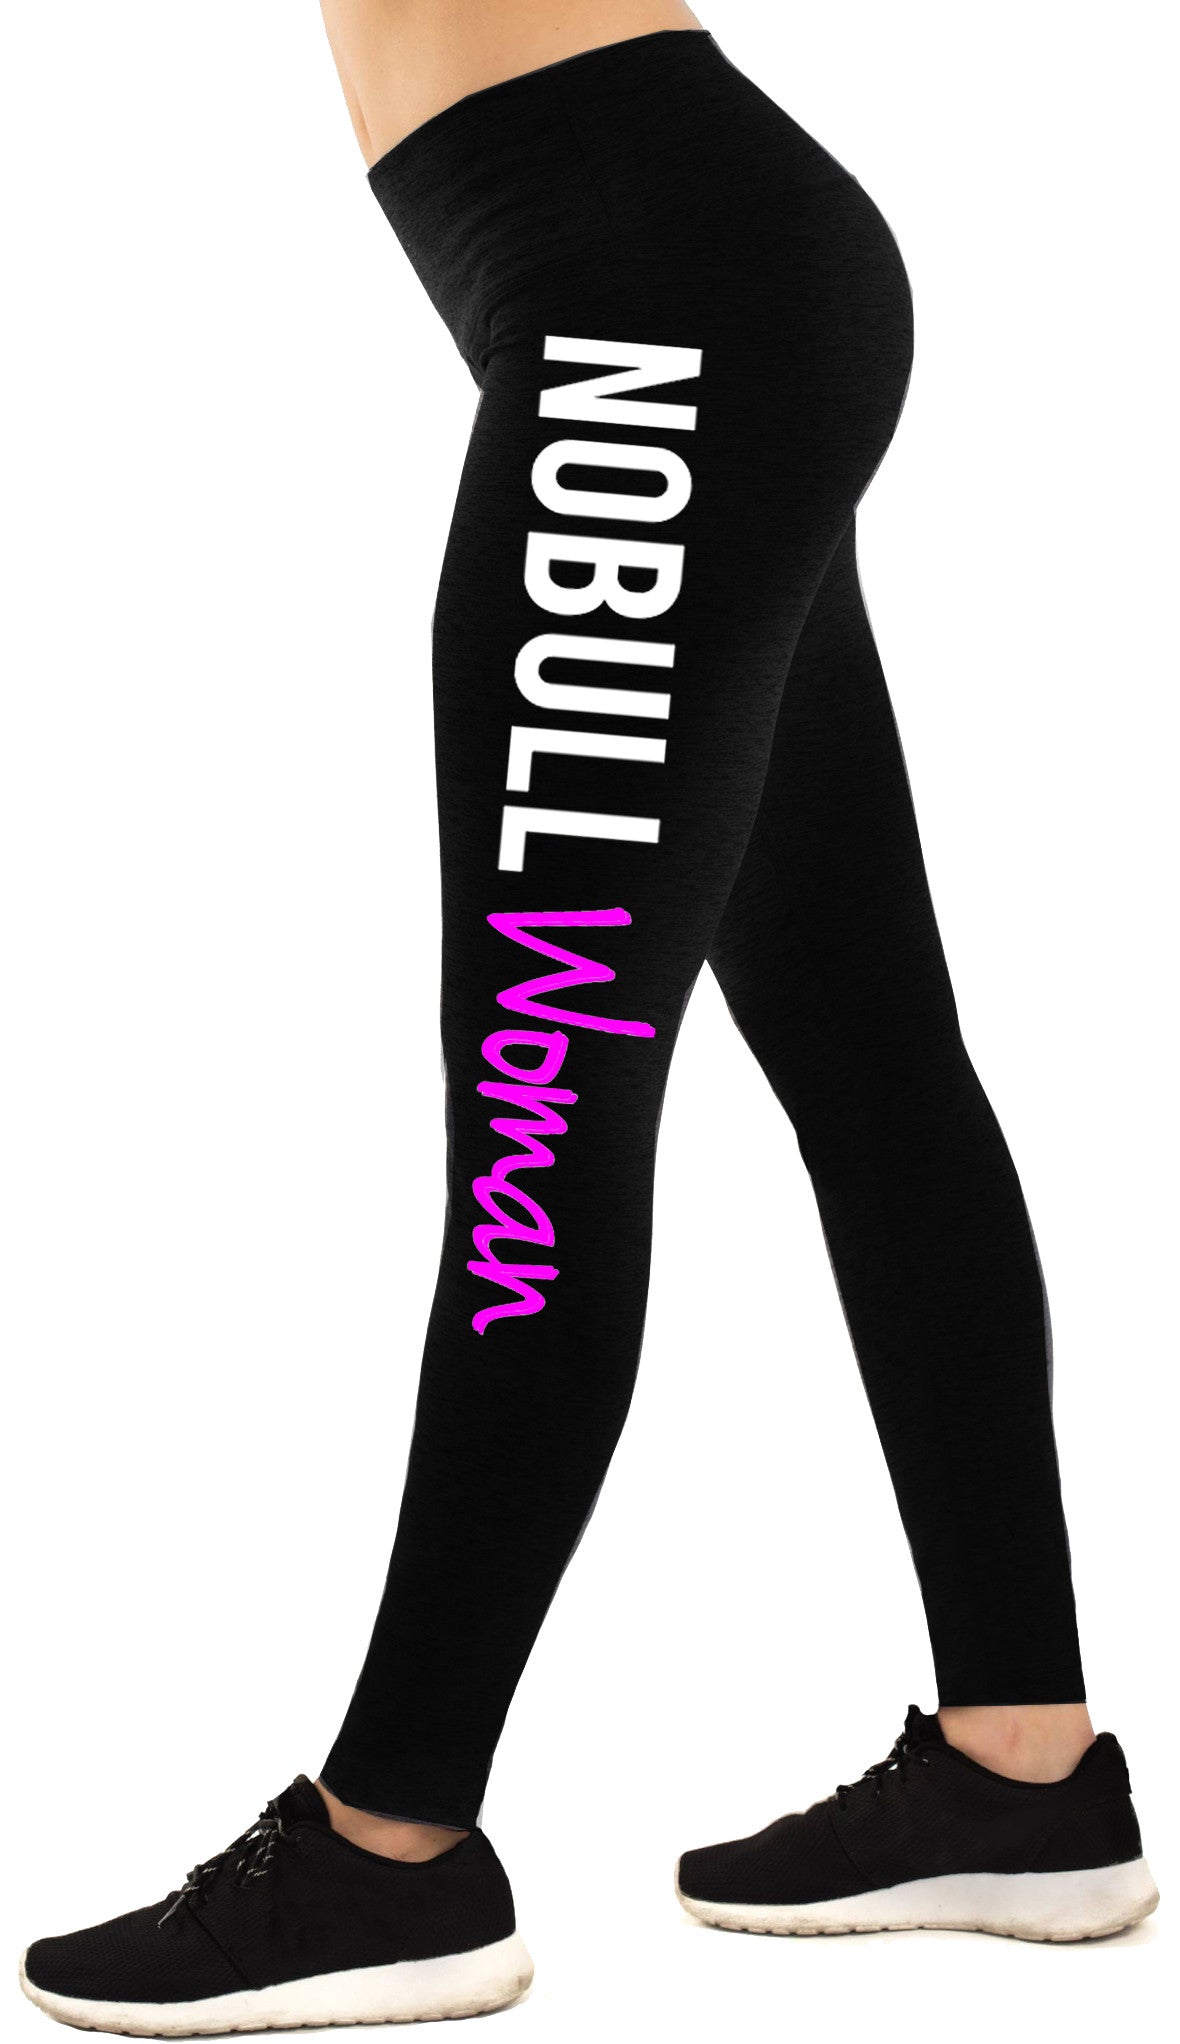 Black & White Workout Vortex Leggings for Women | Devil Walking